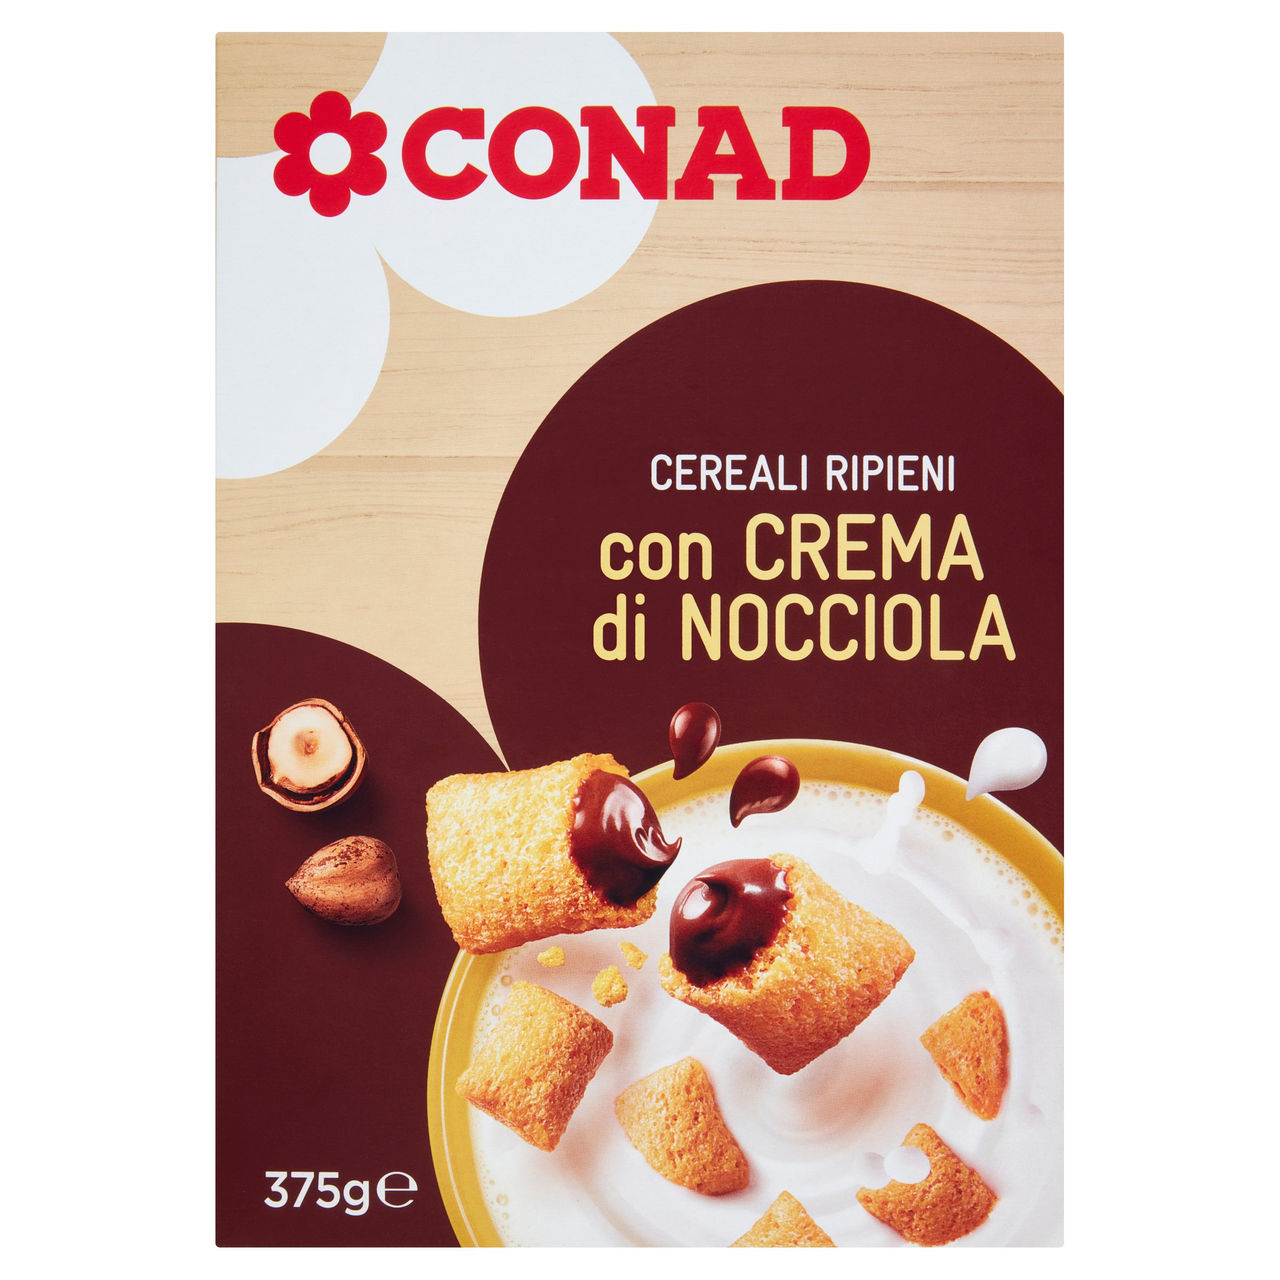 Cereali Croccanti con Cioccolato e Nocciole Conad